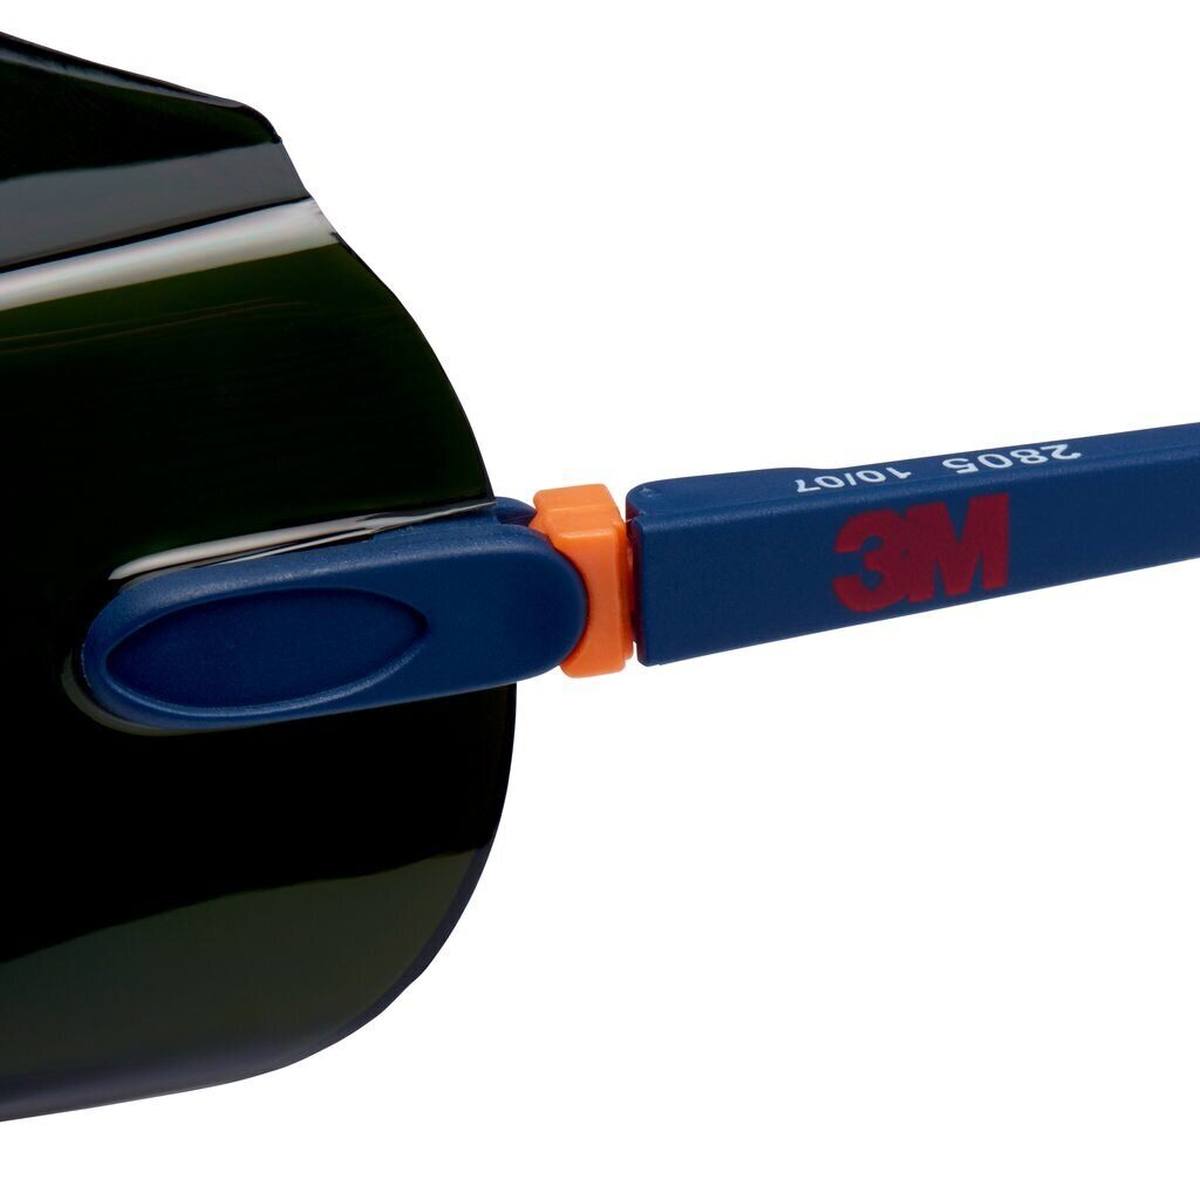 3M 2805 Gafas de protección AS/UV, PC, tintadas en verde, ajustables, ideales como sobregafas para usuarios de gafas, IR 5.0 - aptas para oxicorte y soldadura fuerte